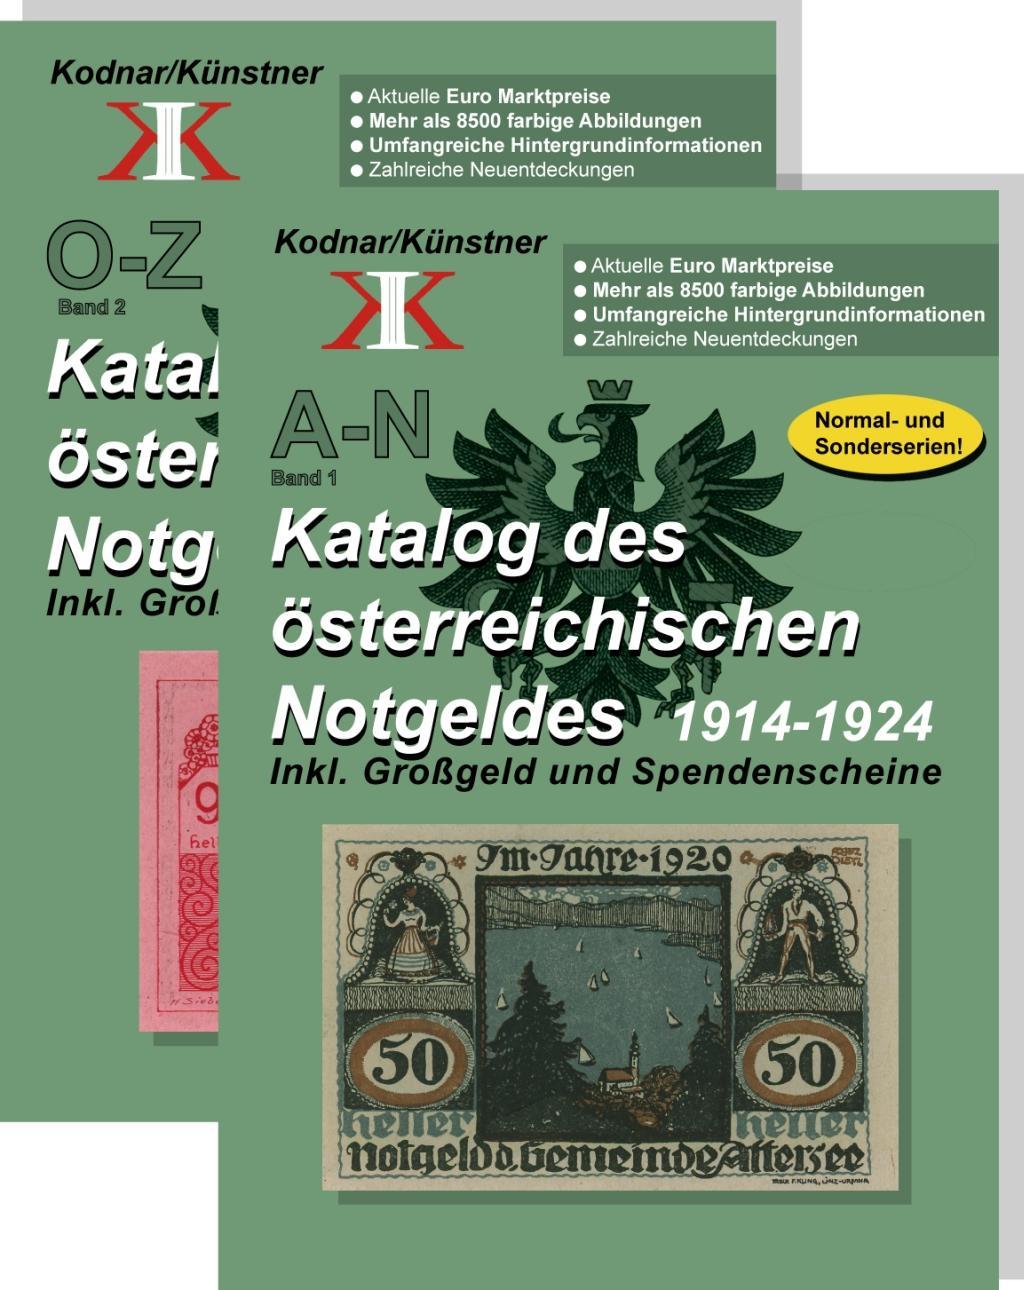 Book Katalog des österreichischen Notgeldes 1914-1924 in 2 Bänden Johann Kodnar